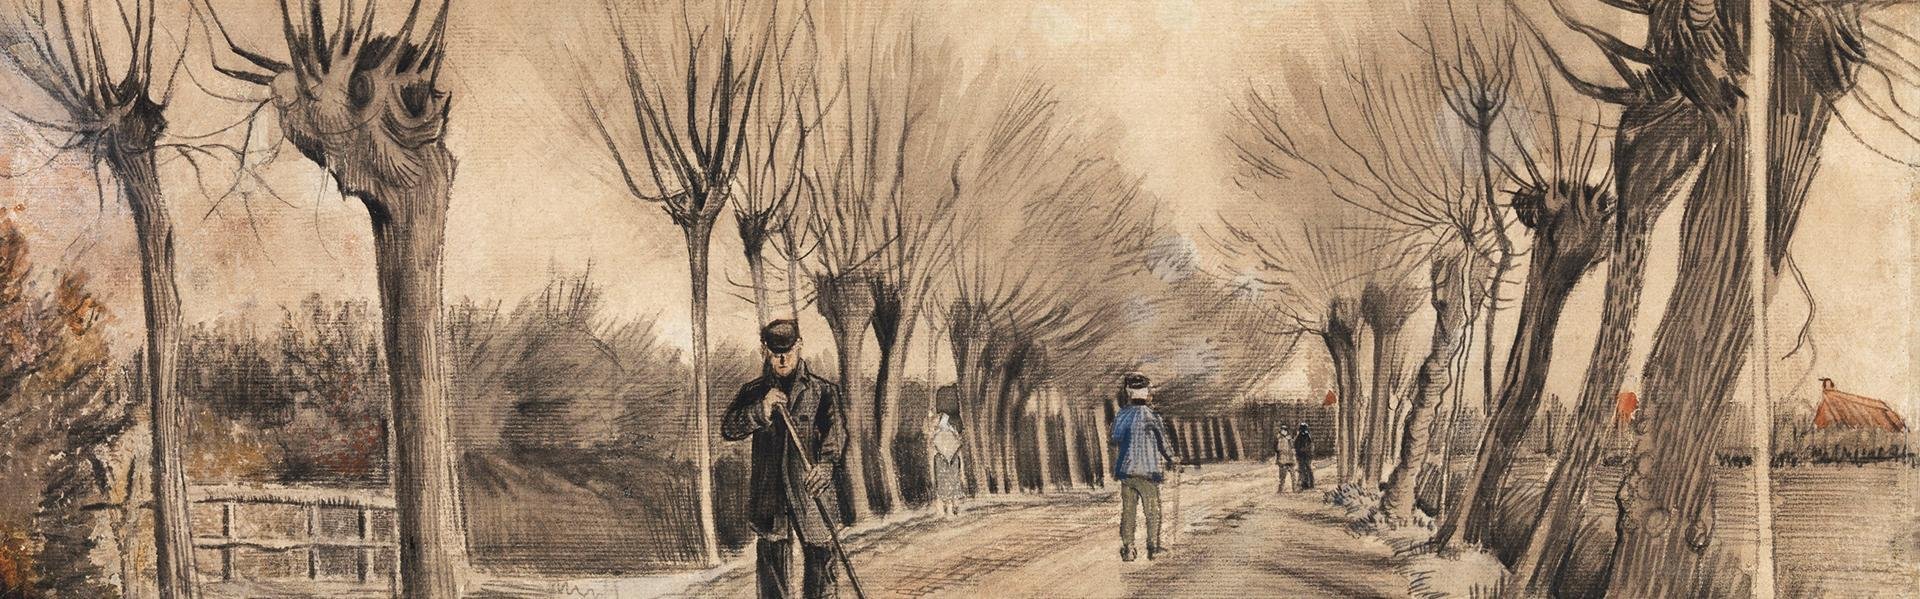 De weg in Etten, Vincent van Gogh, 1881